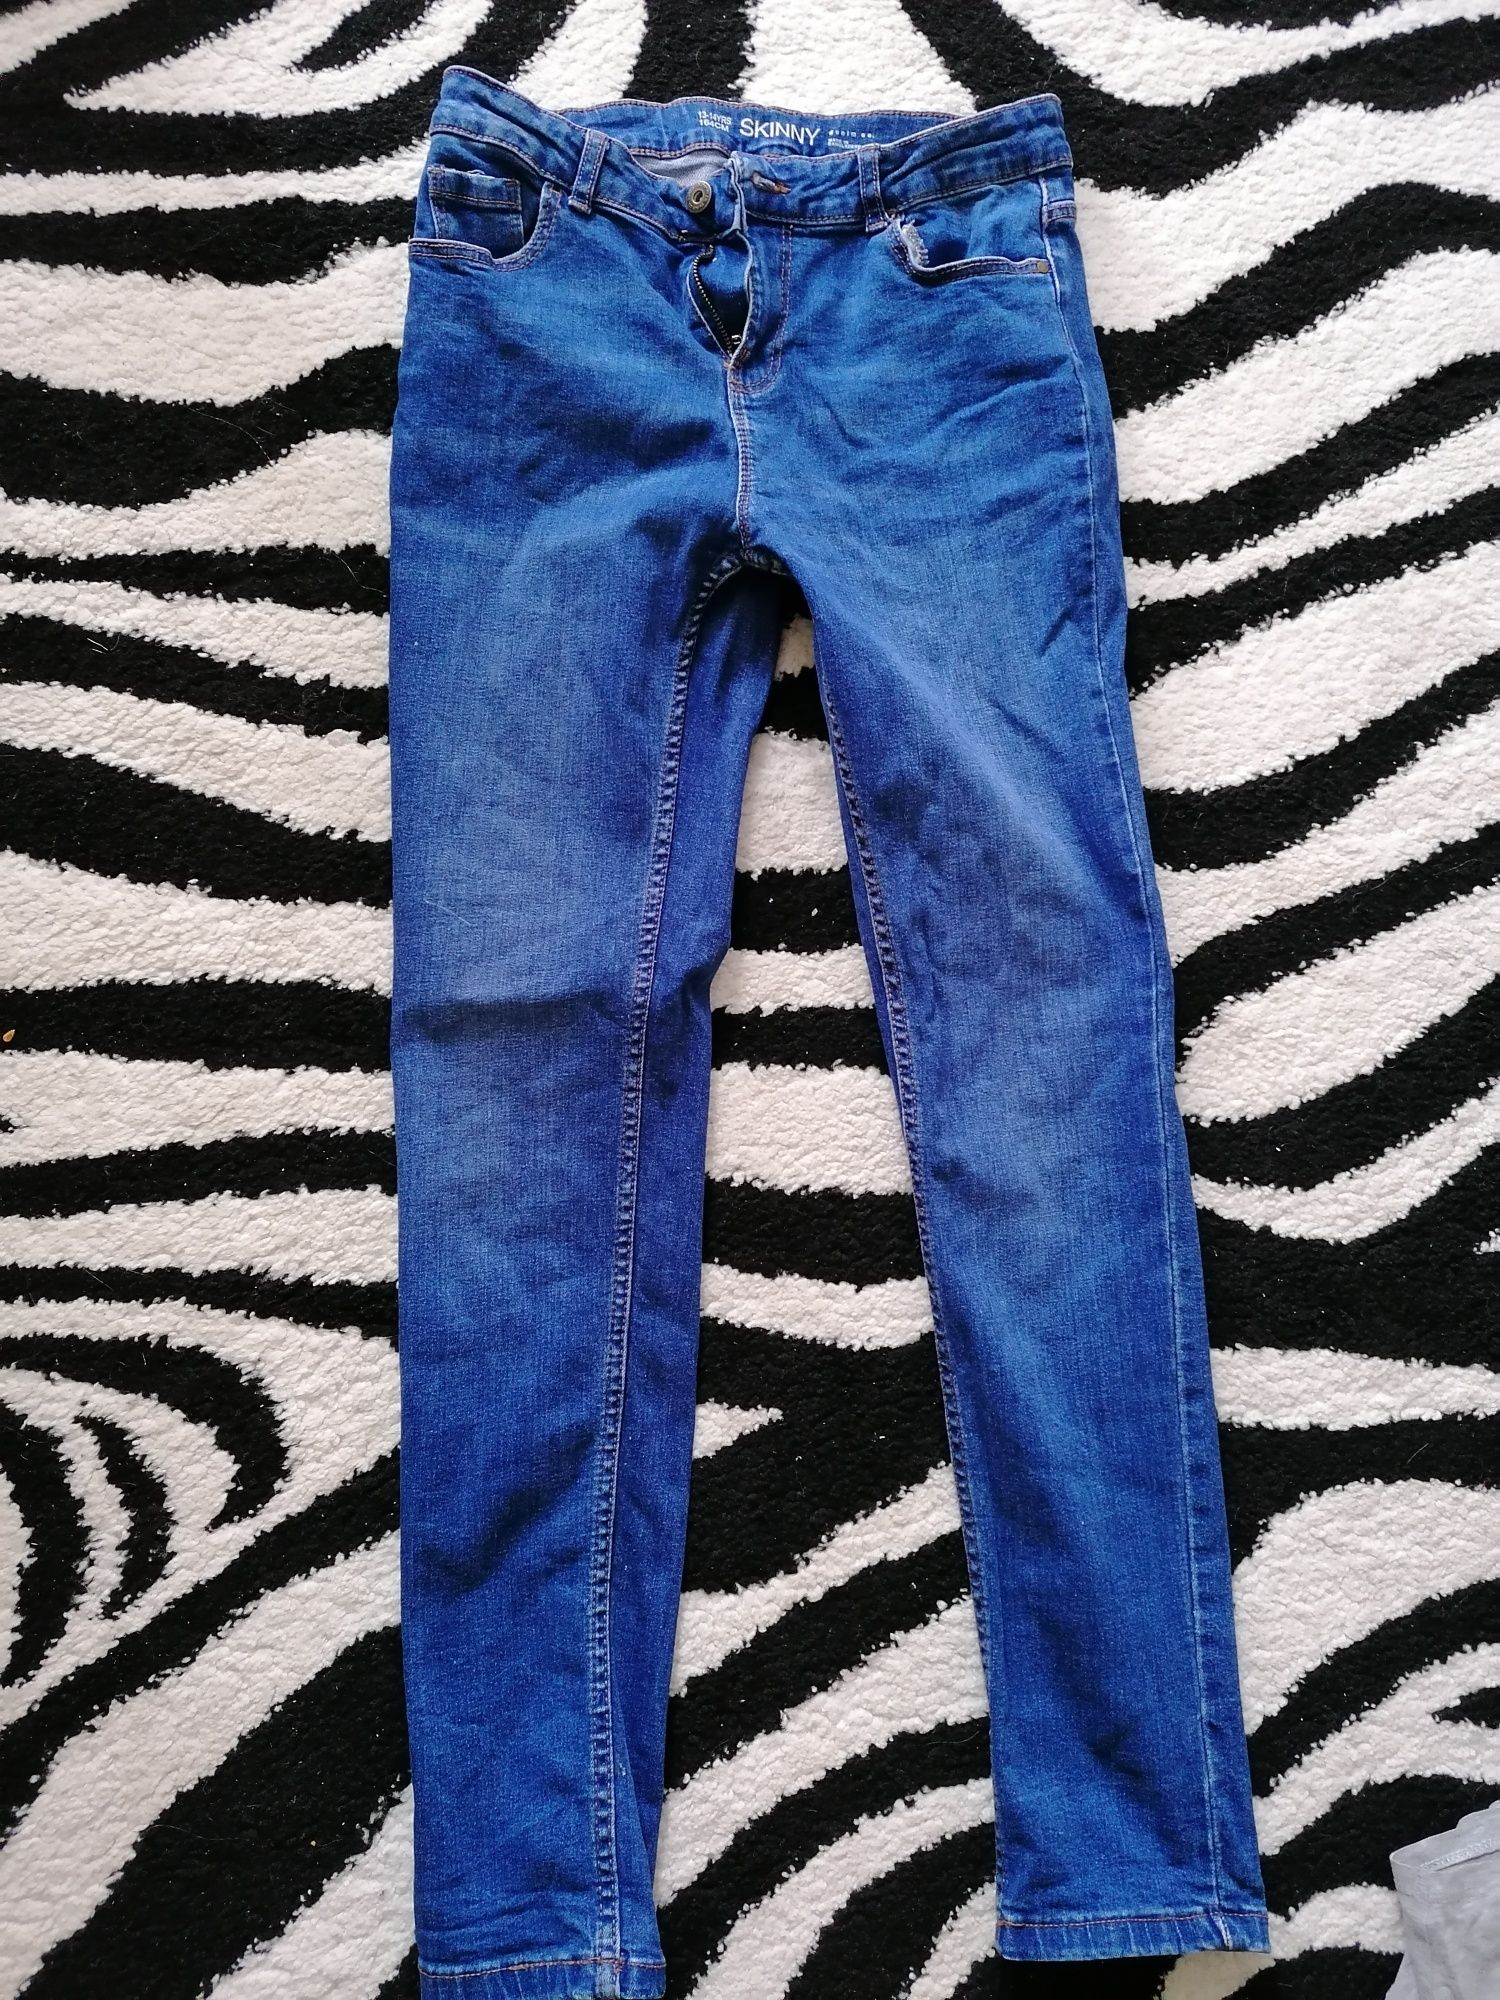 Spodnie jeans żywy kolor